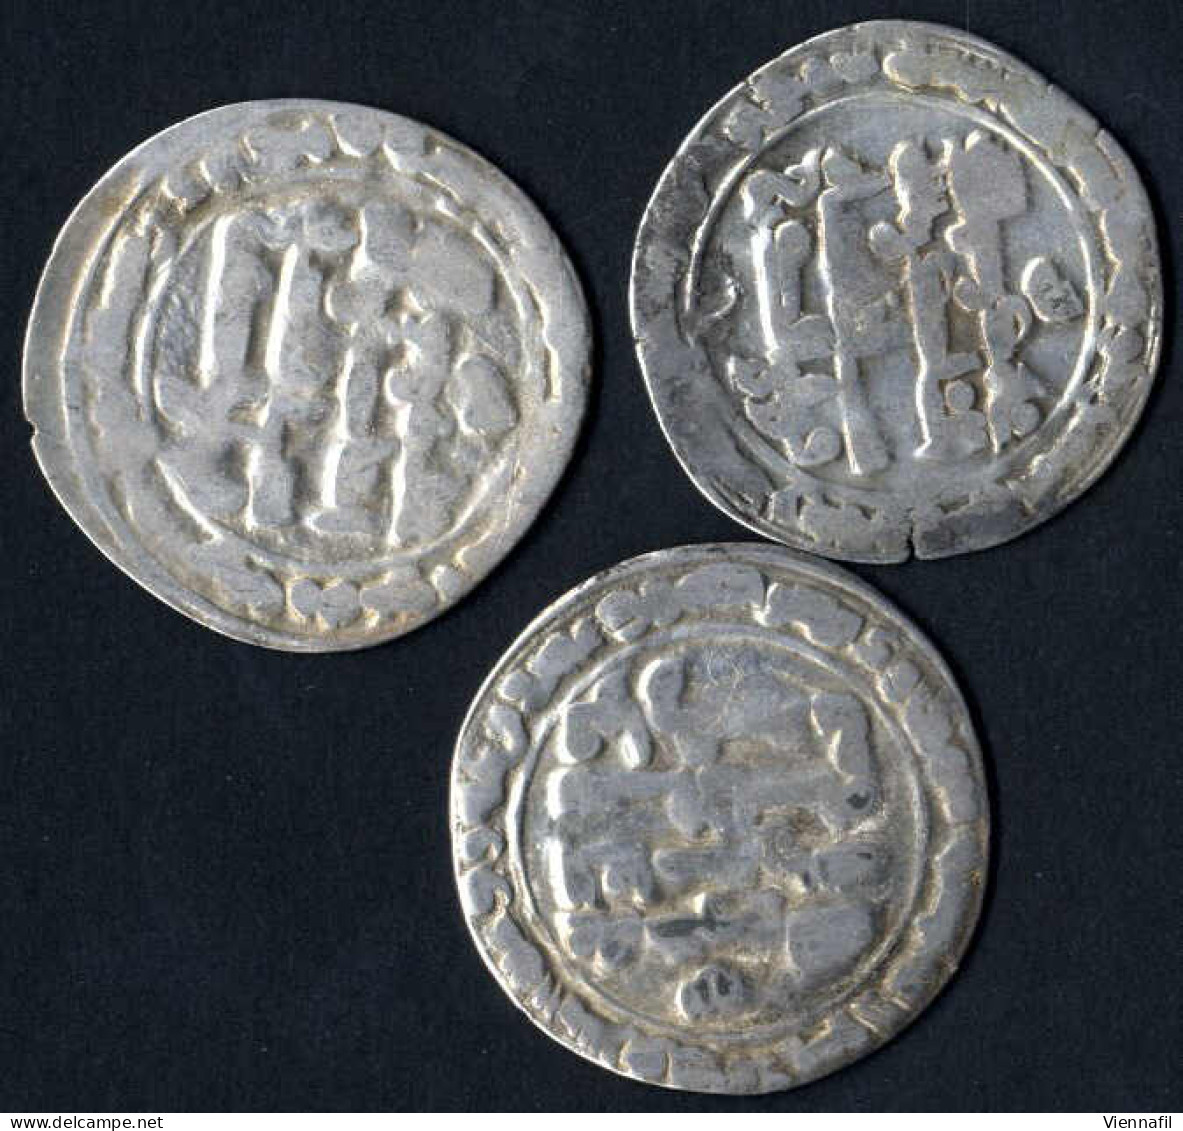 Baha ' Ad-Daulah, 379-403AH 989-1012, Dirham Silber, 397 Suq Al-Ahwaz, BMC 671, Mich 613, Schön, 7 Stück - Islamic